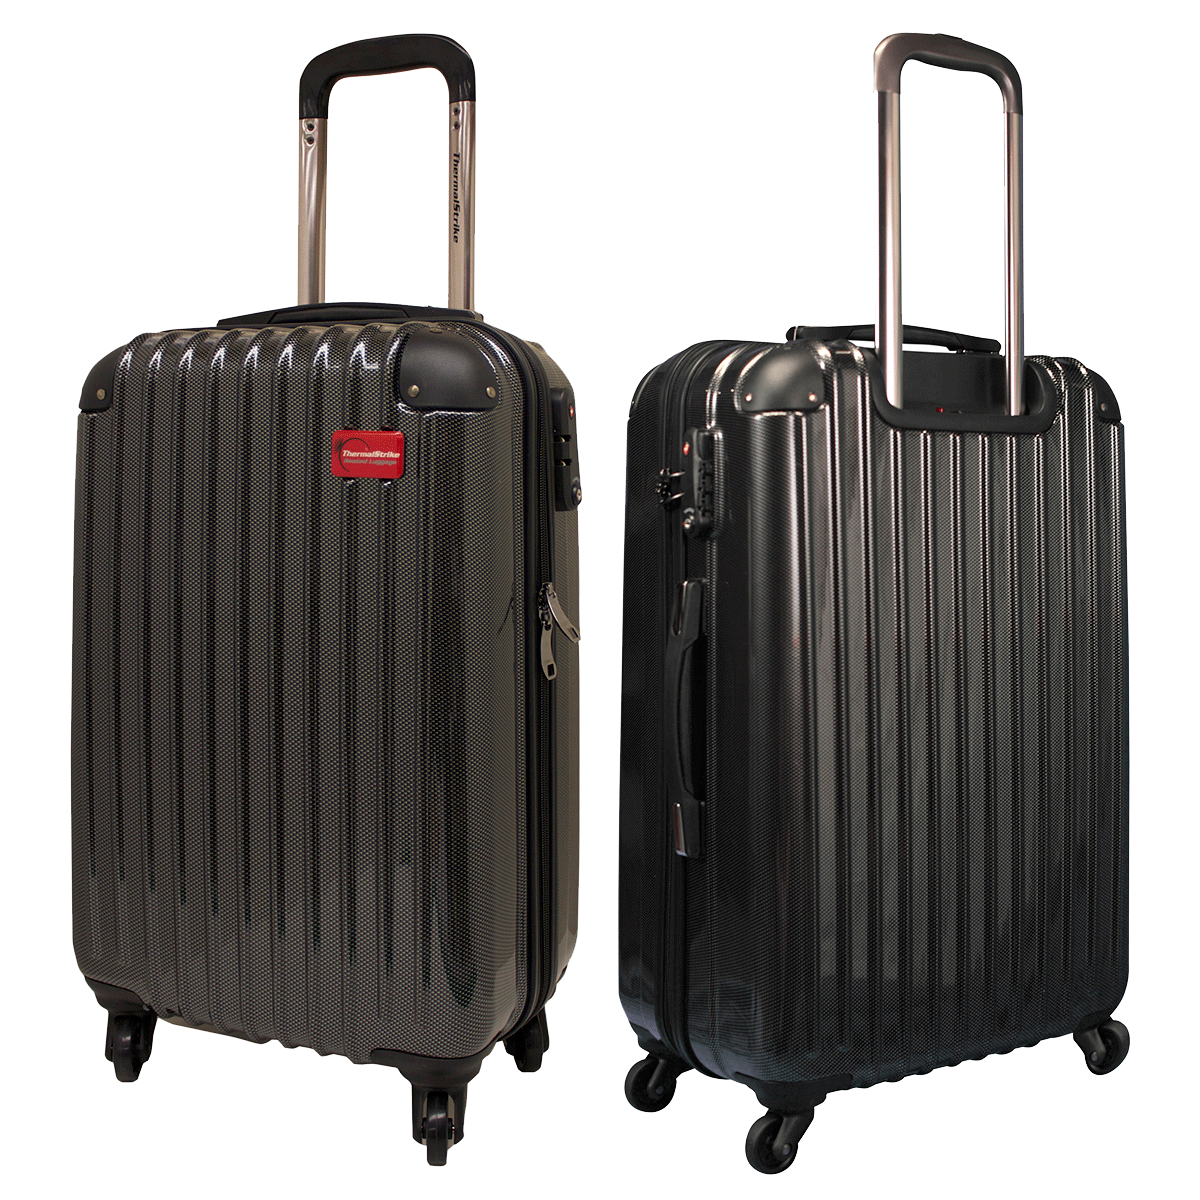 Shiny Black Luggage PNG Image